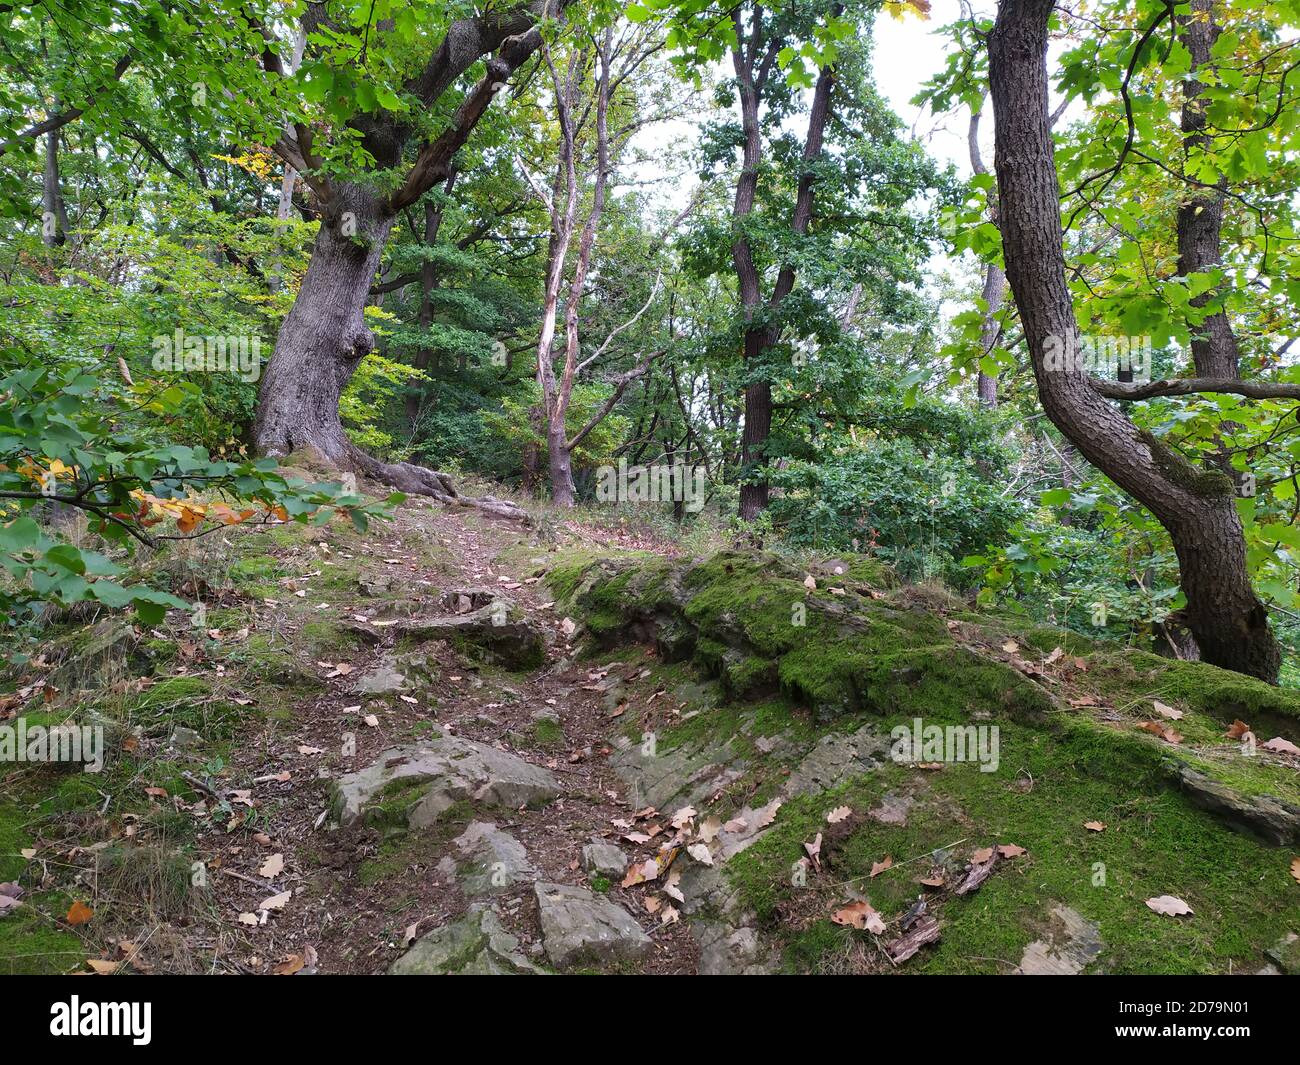 Sentier de randonnée naturel à travers les bois comme chemin de randonnée idyllique pour les amoureux de la nature proche de la nature dans un paysage paisible avec arbres et feuillage en automne Banque D'Images